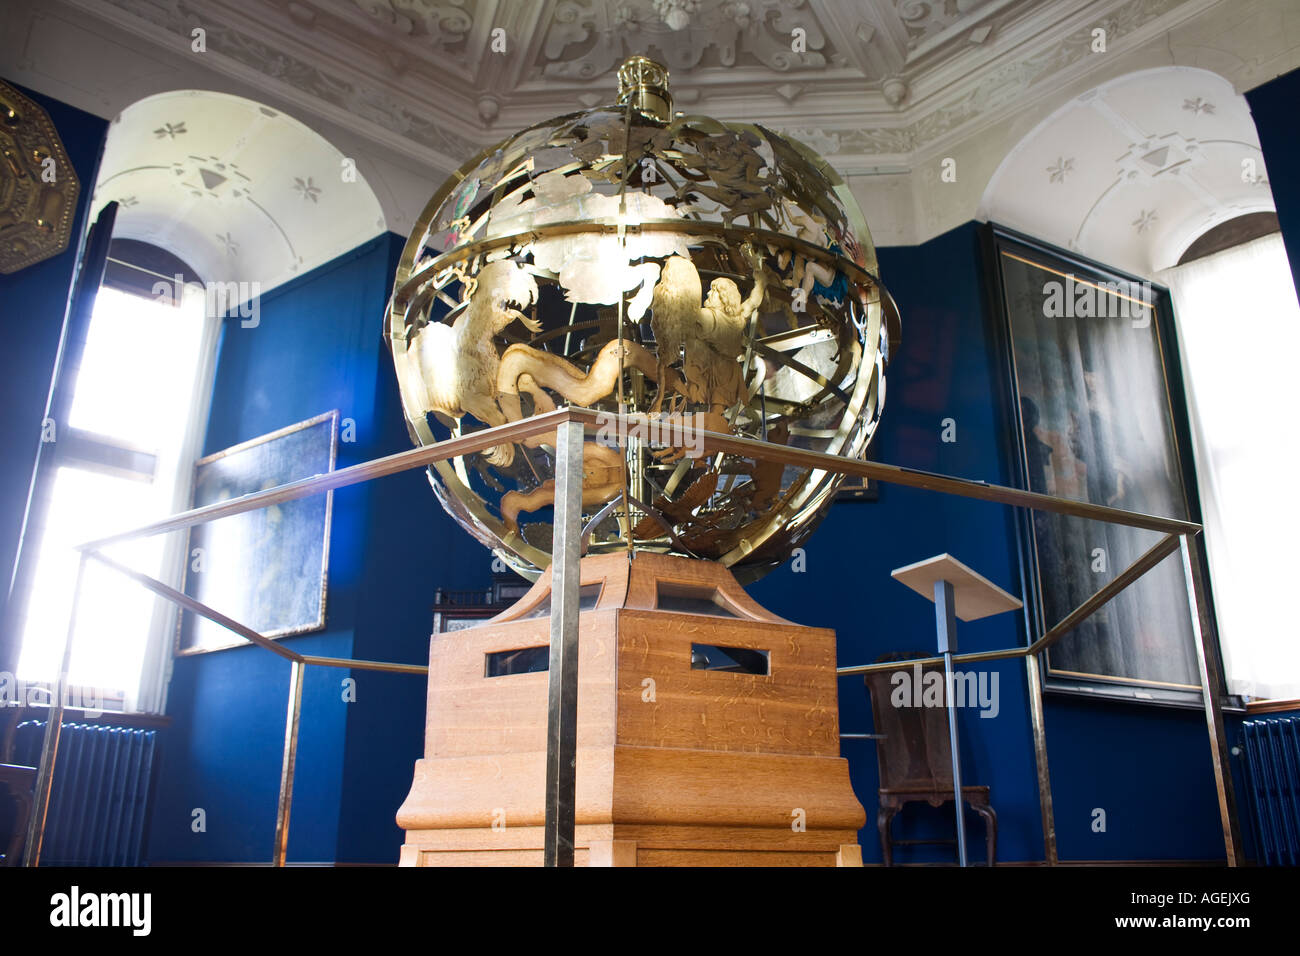 Earth globe en laiton avec des dessins d'or mythique - Frederiksborg - Hillerod, Danemark Banque D'Images